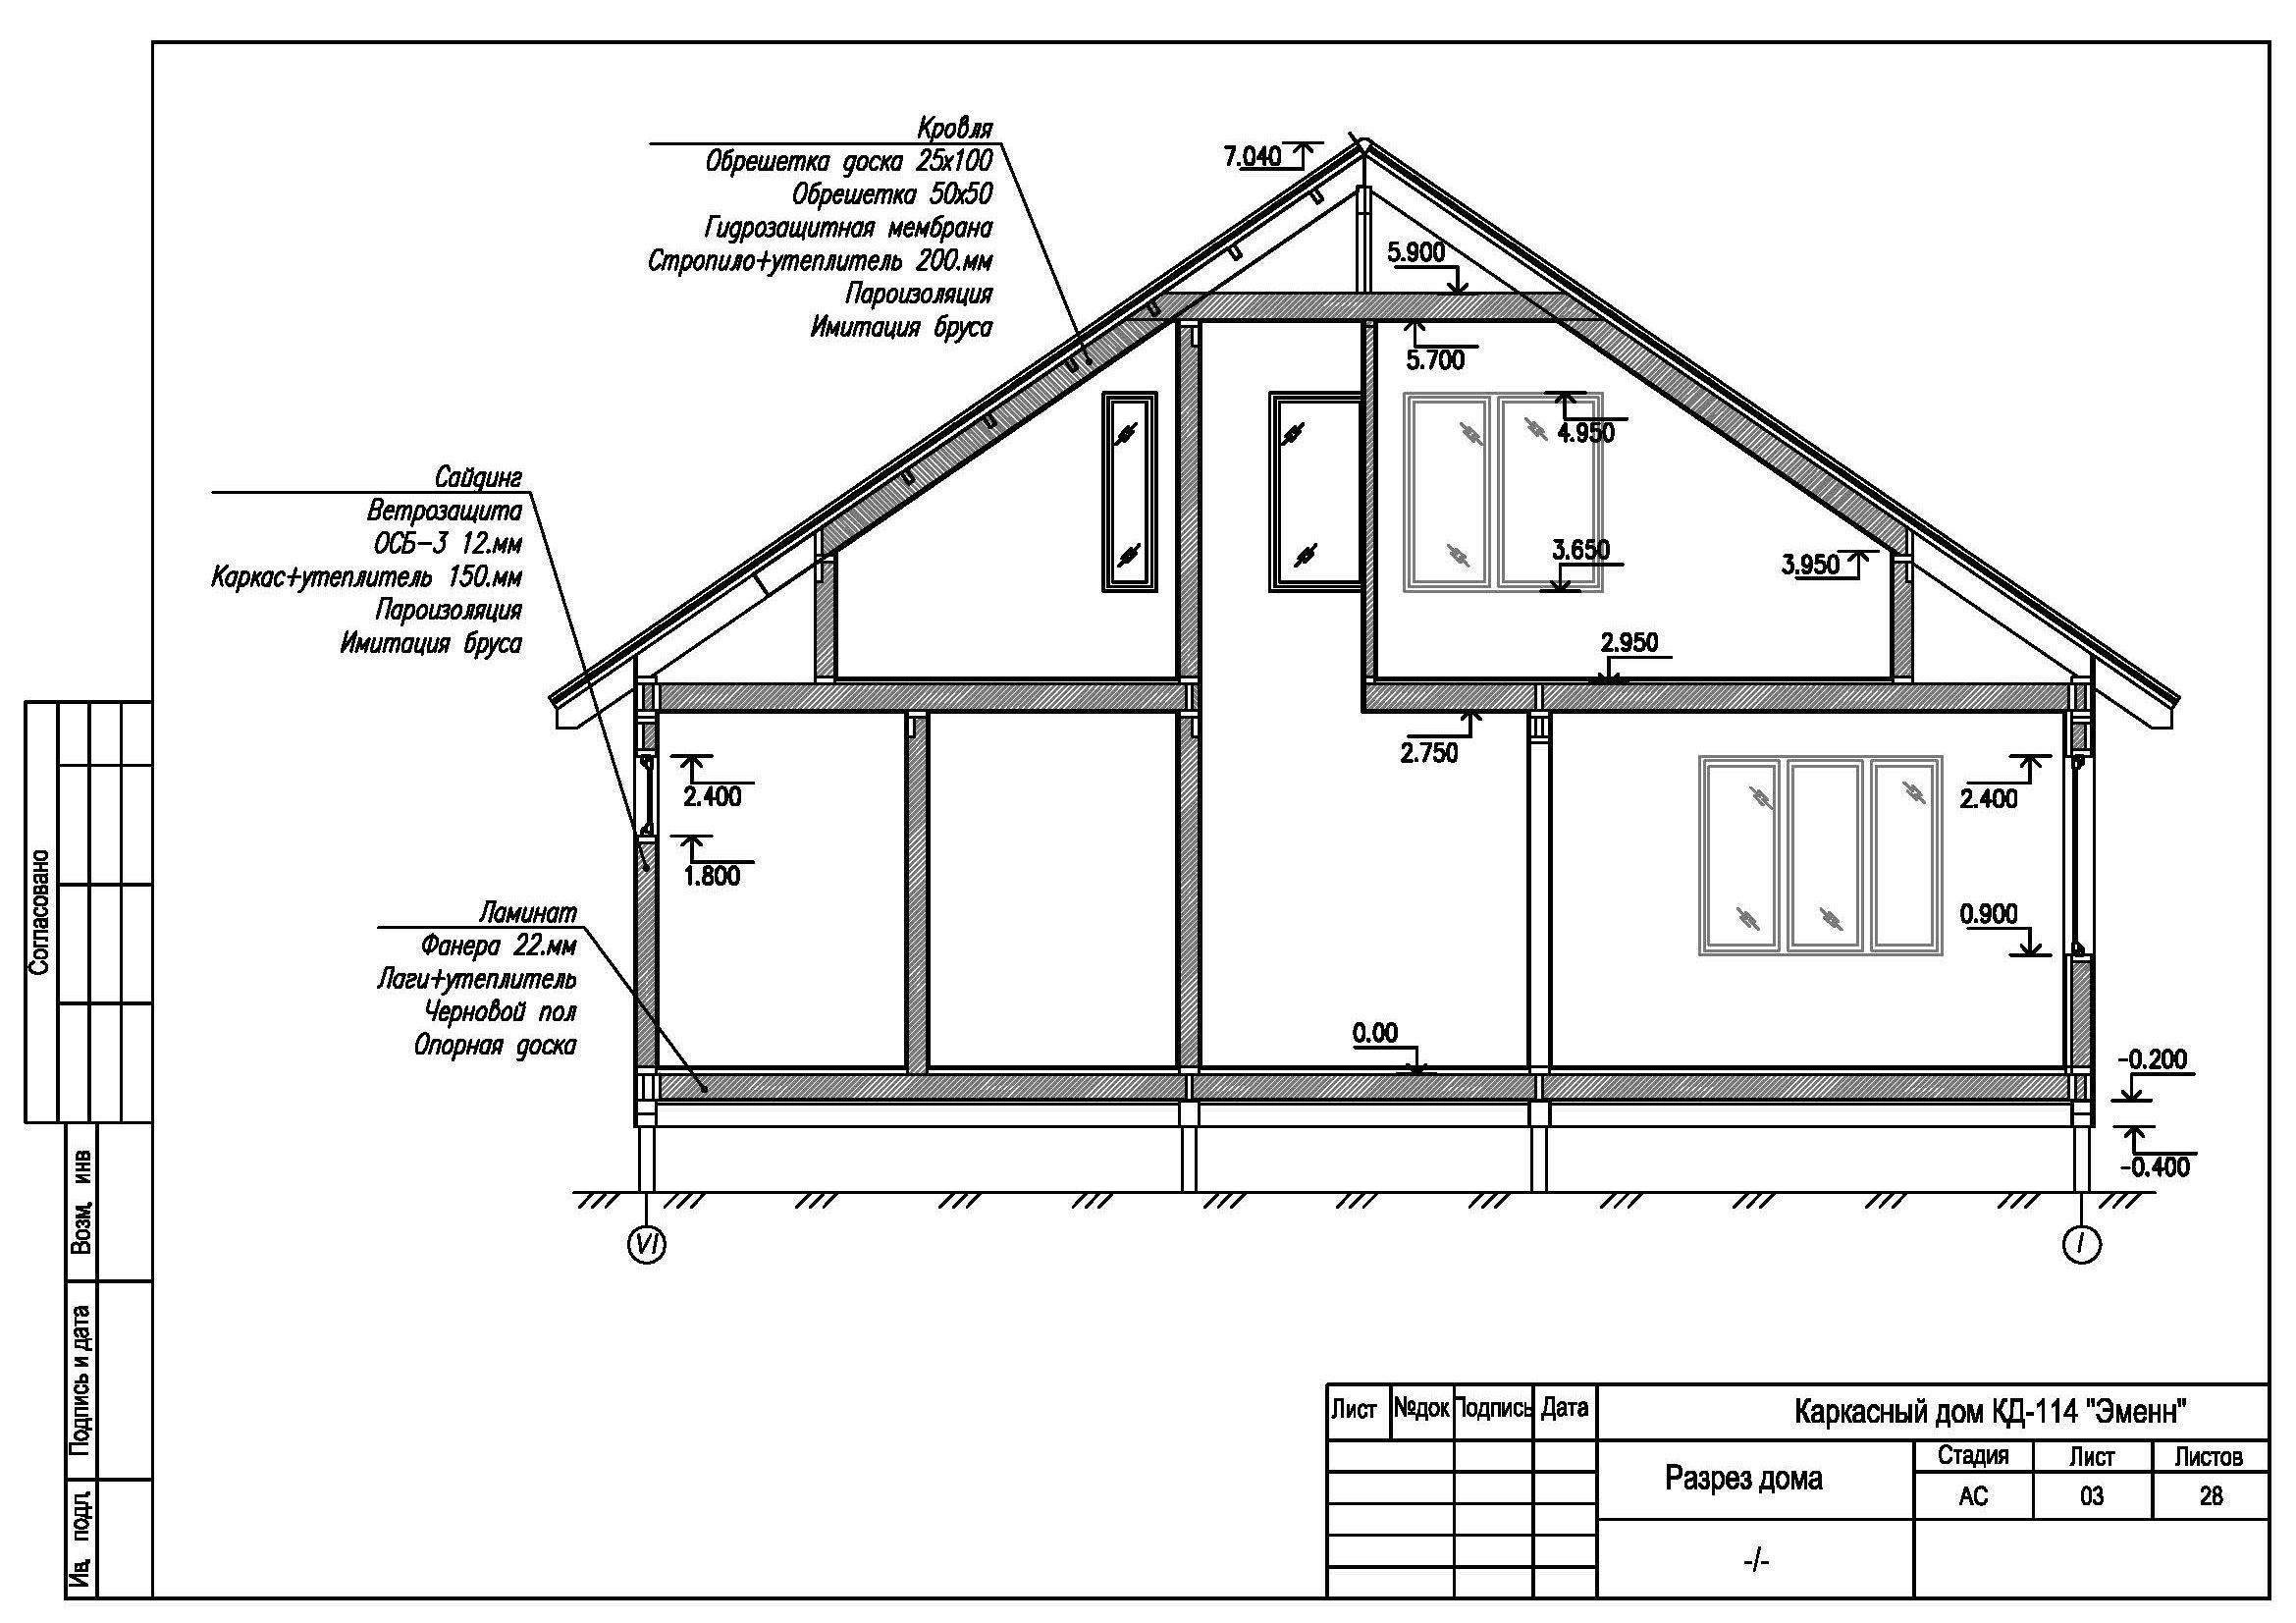 Расчет стоимости каркасного дома: калькулятор онлайн, рассчитать материал для строительства